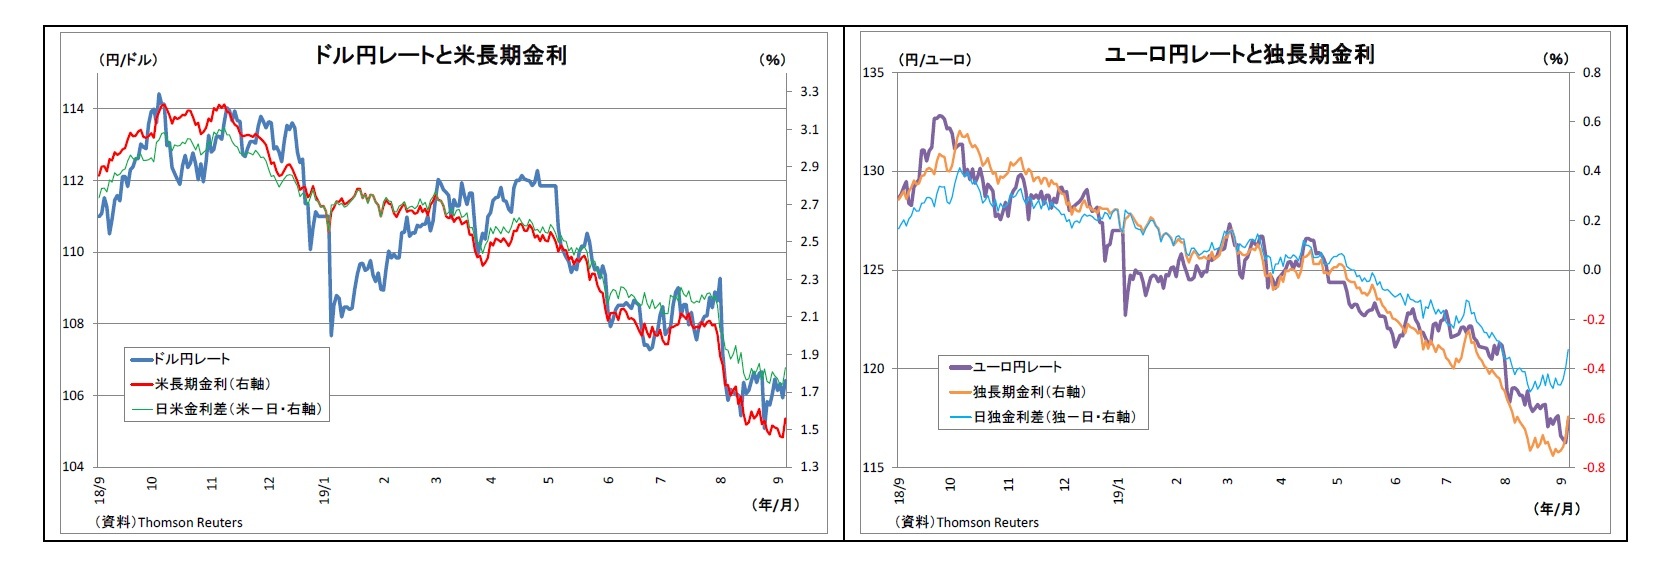 ドル円レートと米長期金利/ユーロ円レートと独長期金利